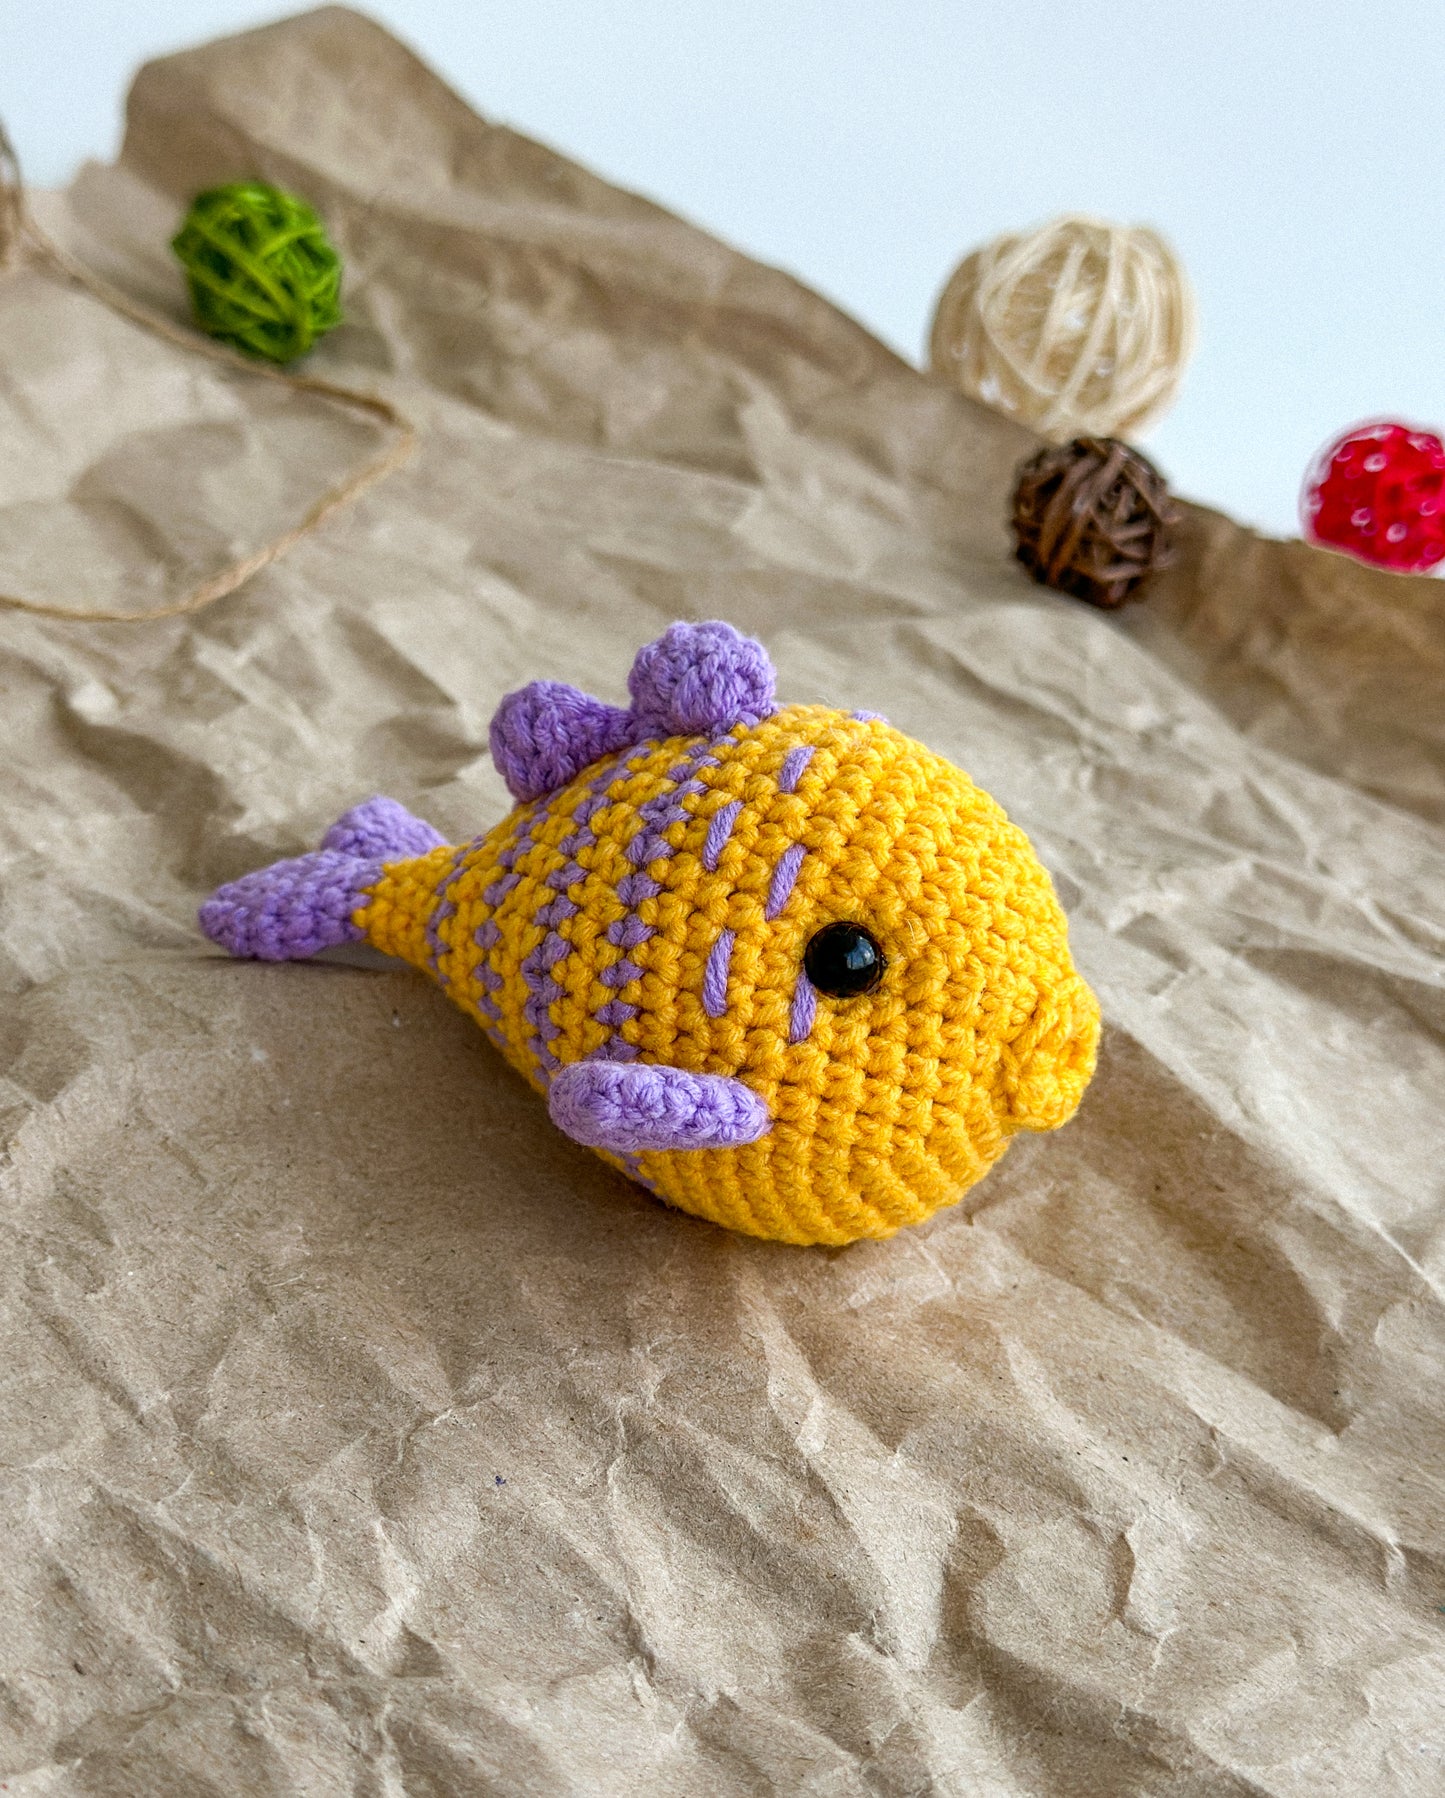 Handmade Crochet Fish